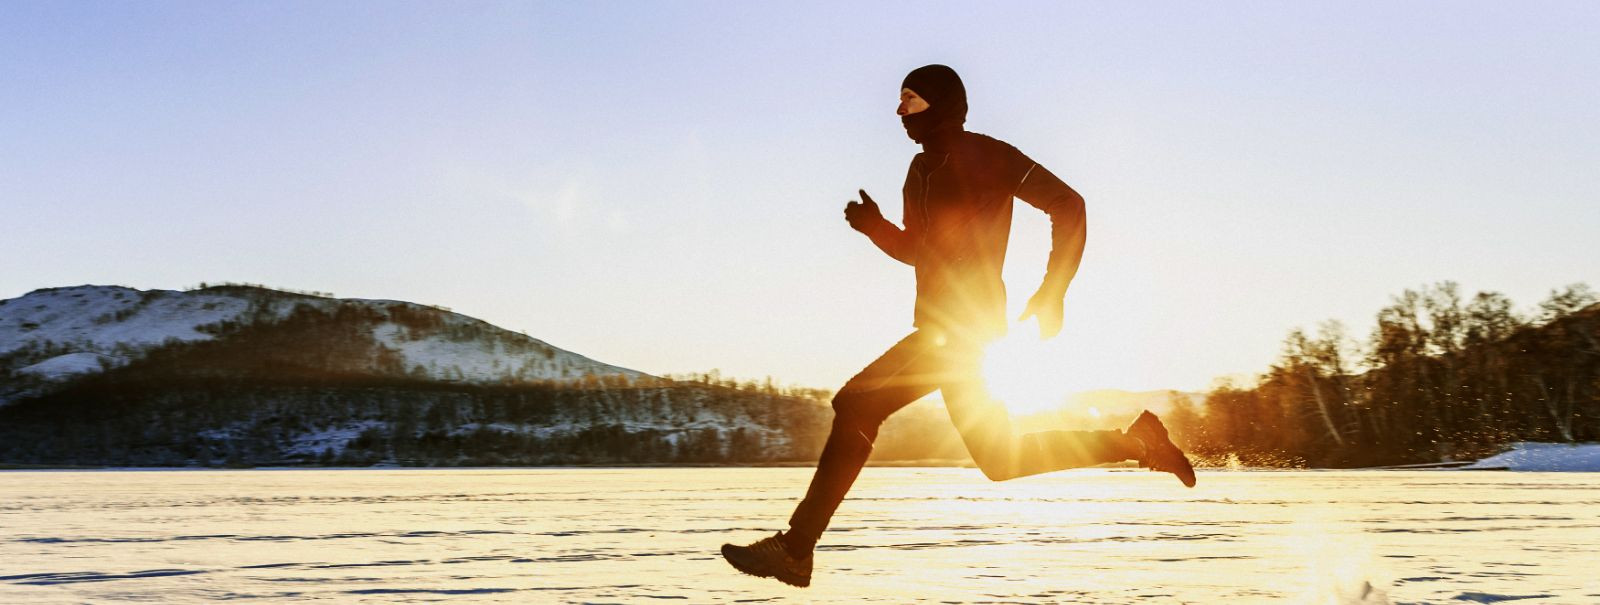 Jooksmine on aastaringne sport, kuid vajalik varustus võib aastaaegadest olenevalt kardinaalselt muutuda. Olgu sa kogenud maratoonar või harrastusjooksja, õige 